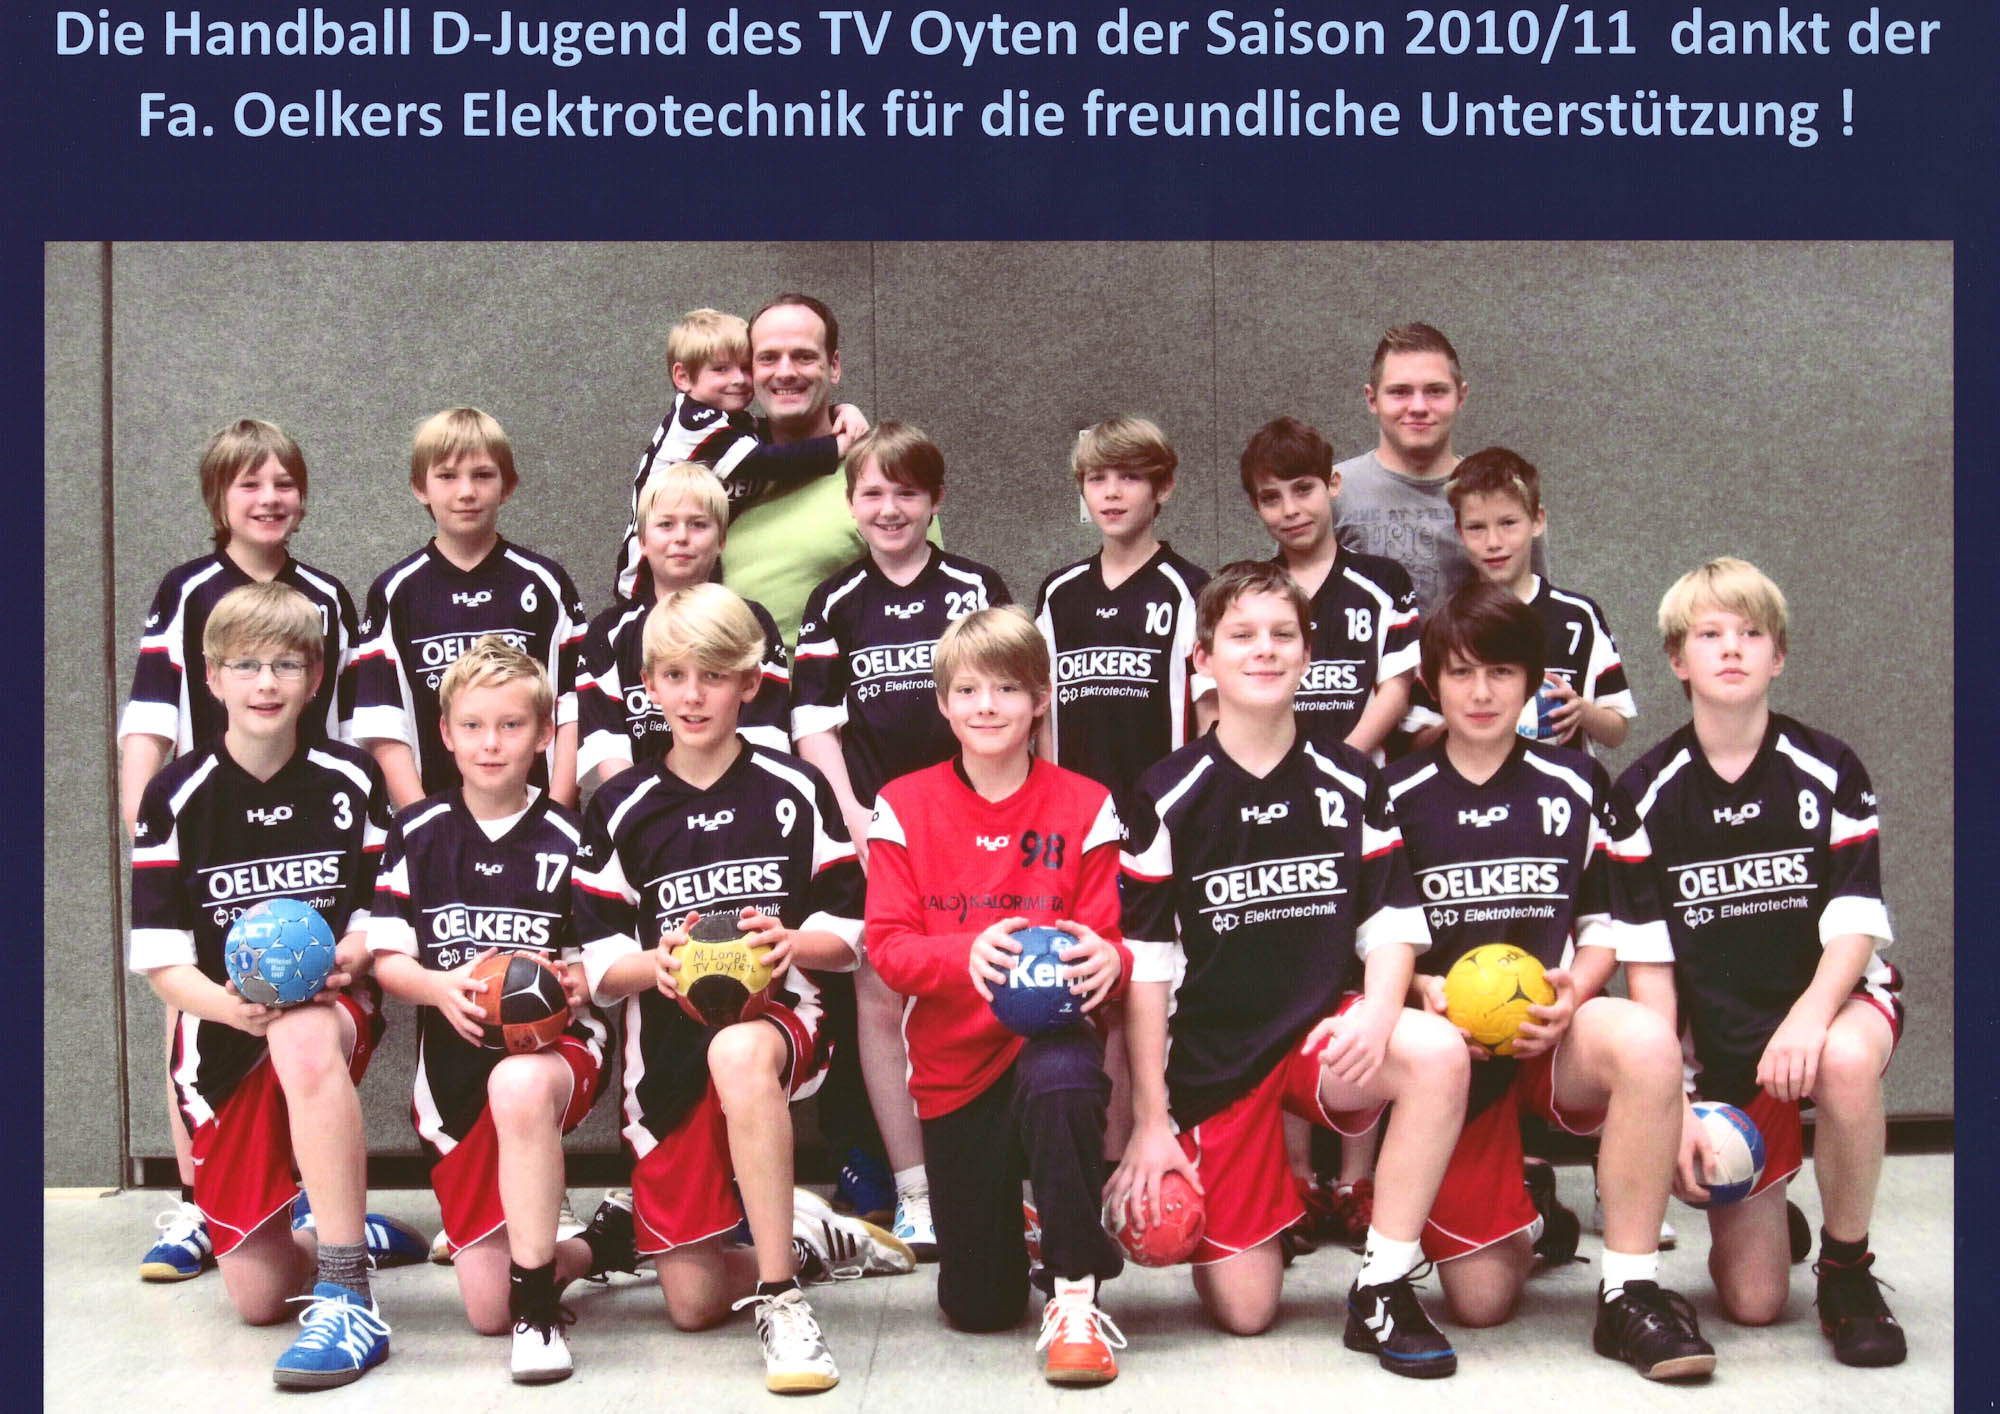 Sponsoring TV Oyten Handball D-Jugend 2010/11